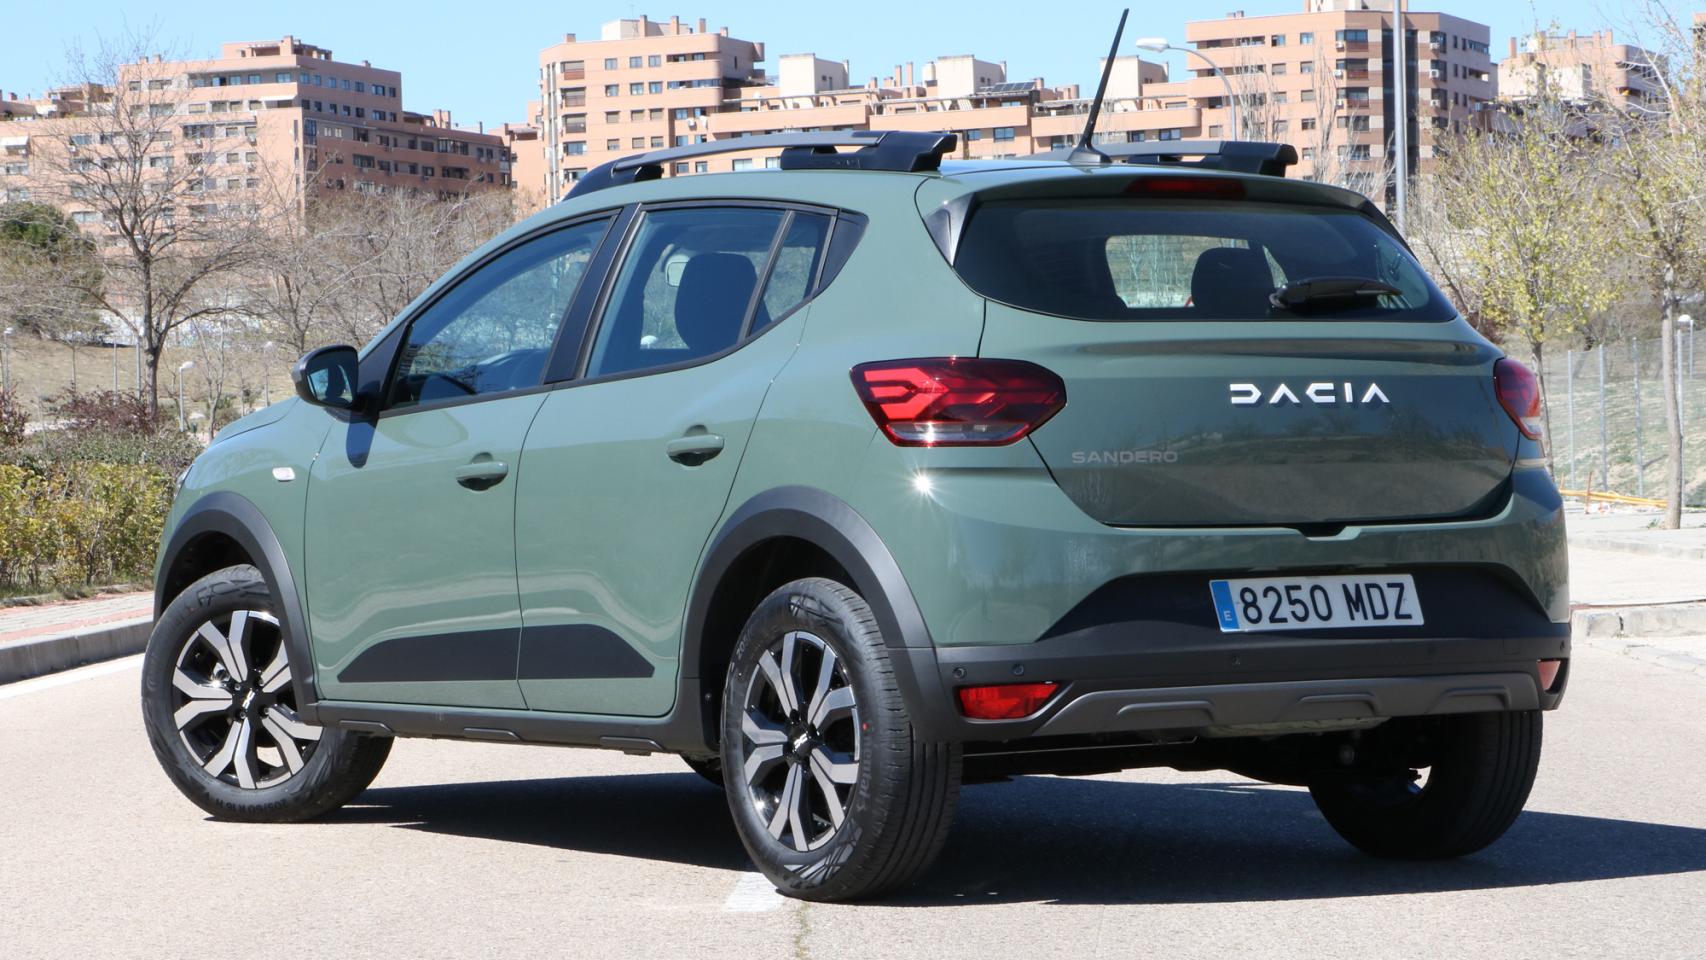 Probamos el Dacia Sandero: ¿Es el coche nuevo más barato en España? ¿Hay  algún rival mejor?